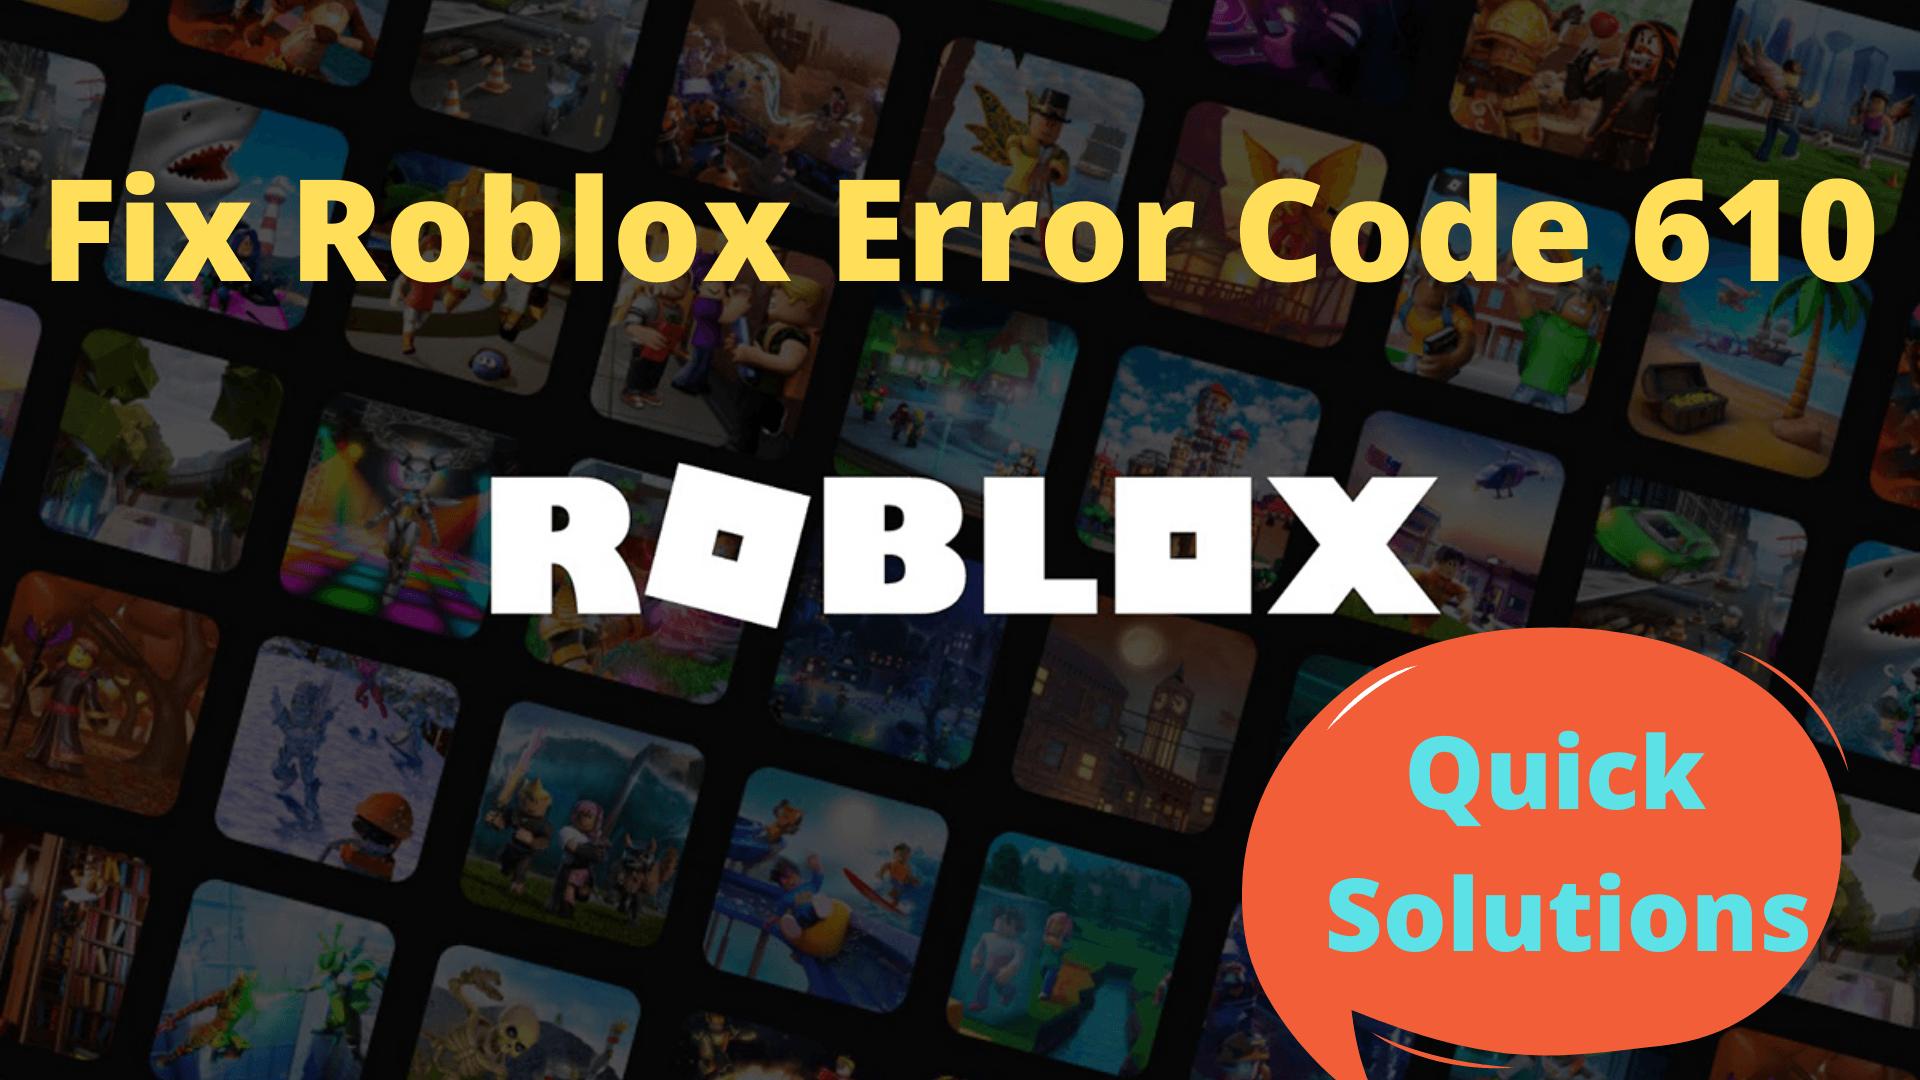 All Roblox Error Codes